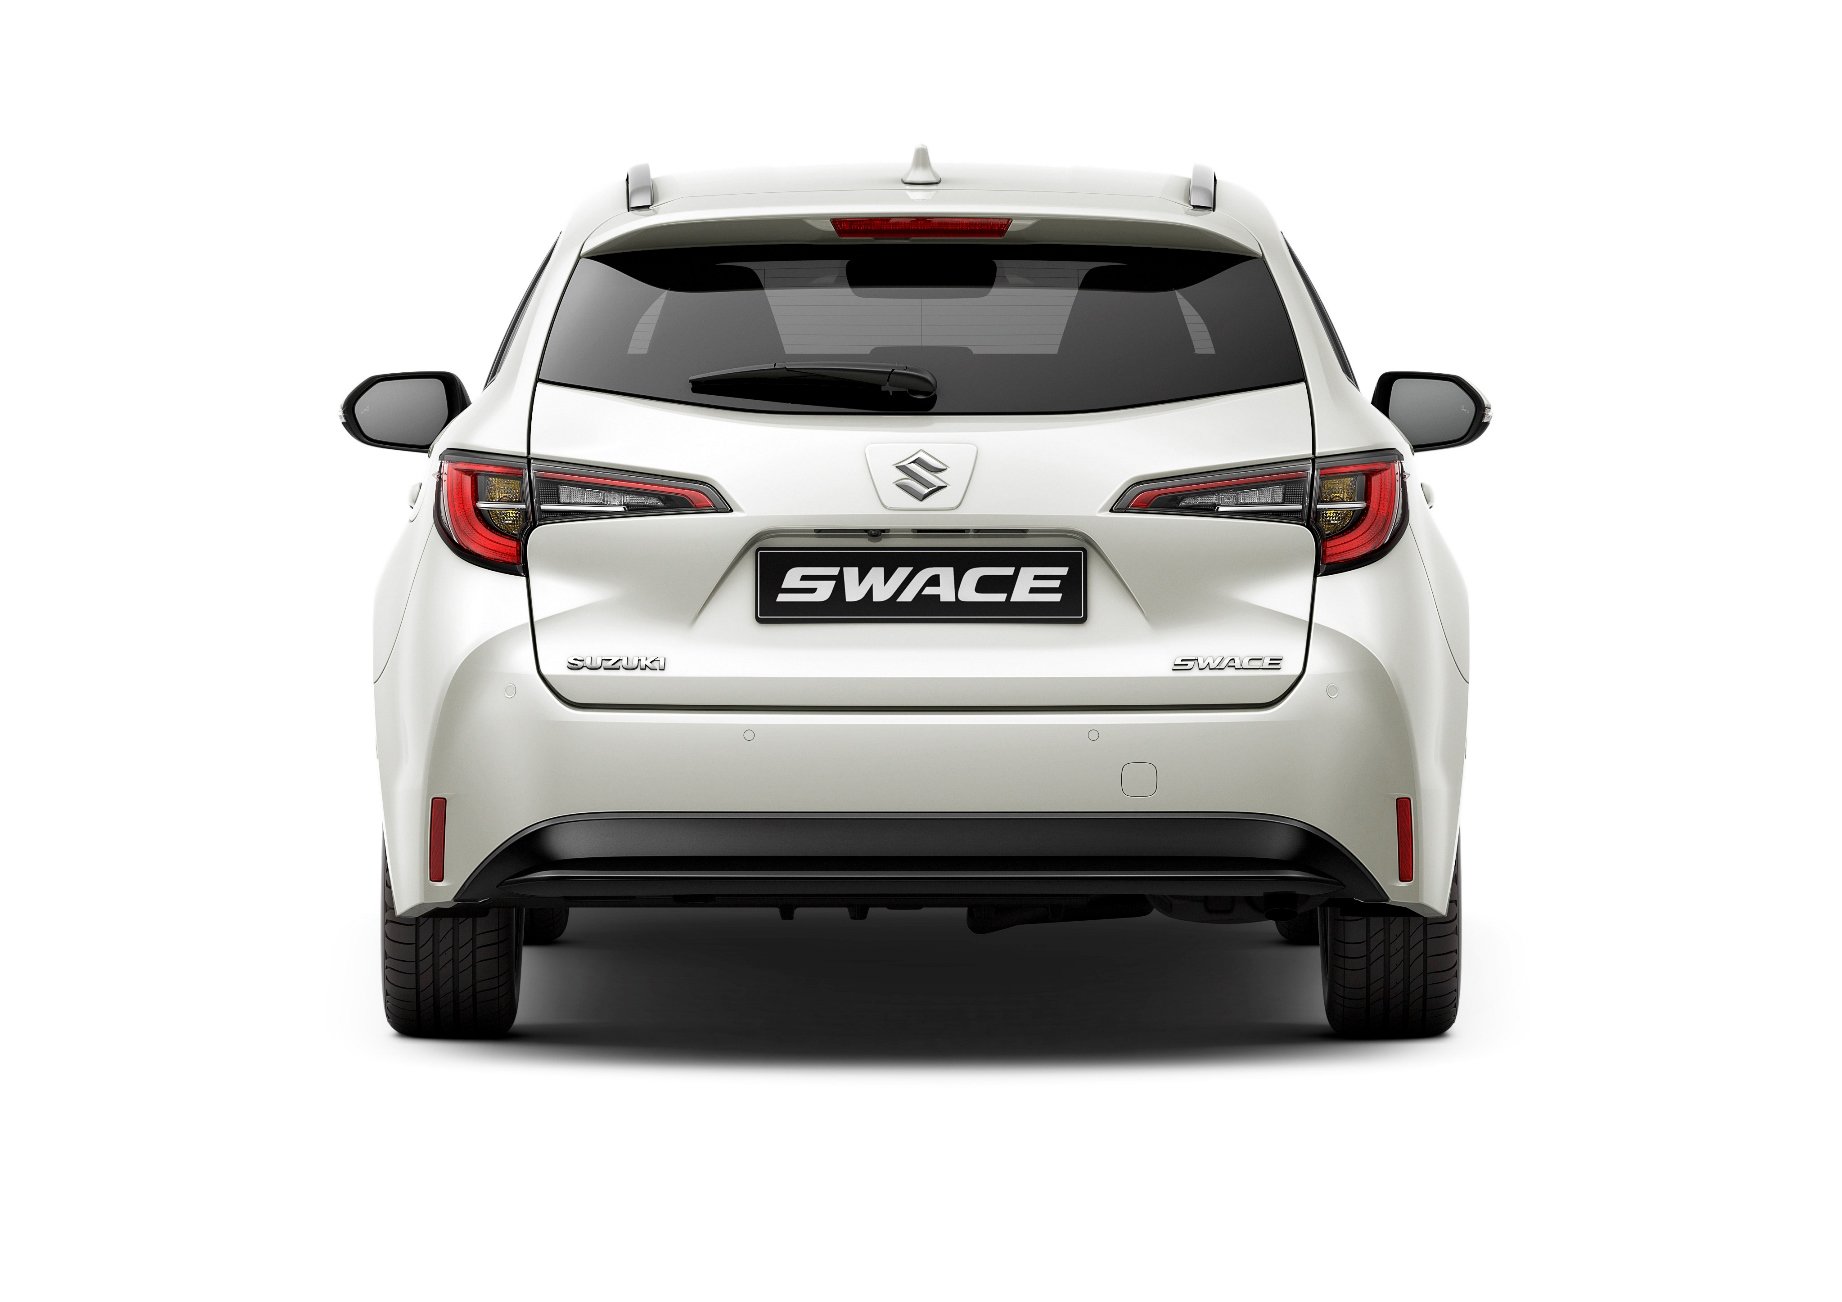 Suzuki po 20 letech opět nabízí klasické kombi nazvané Swace